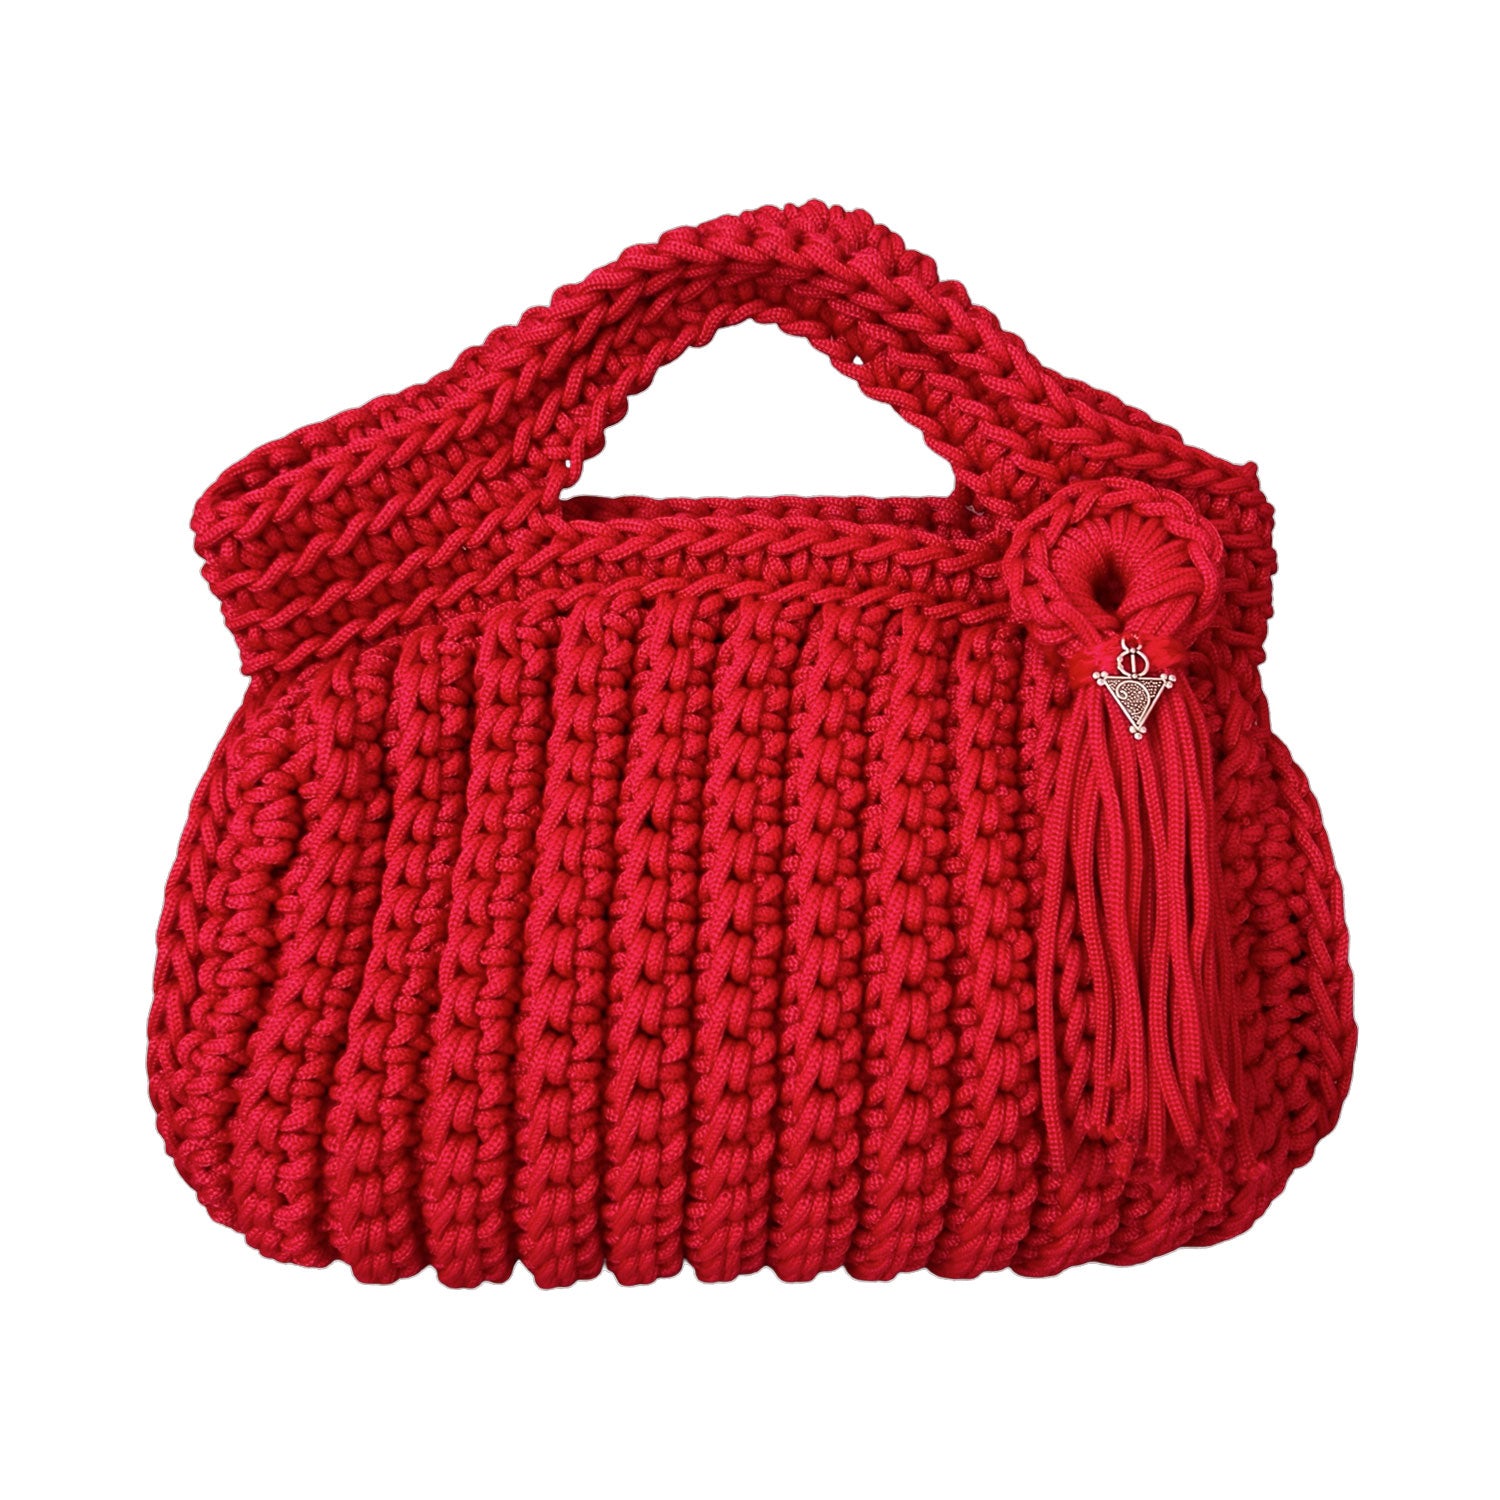 Mini Crochet Handbag in Red